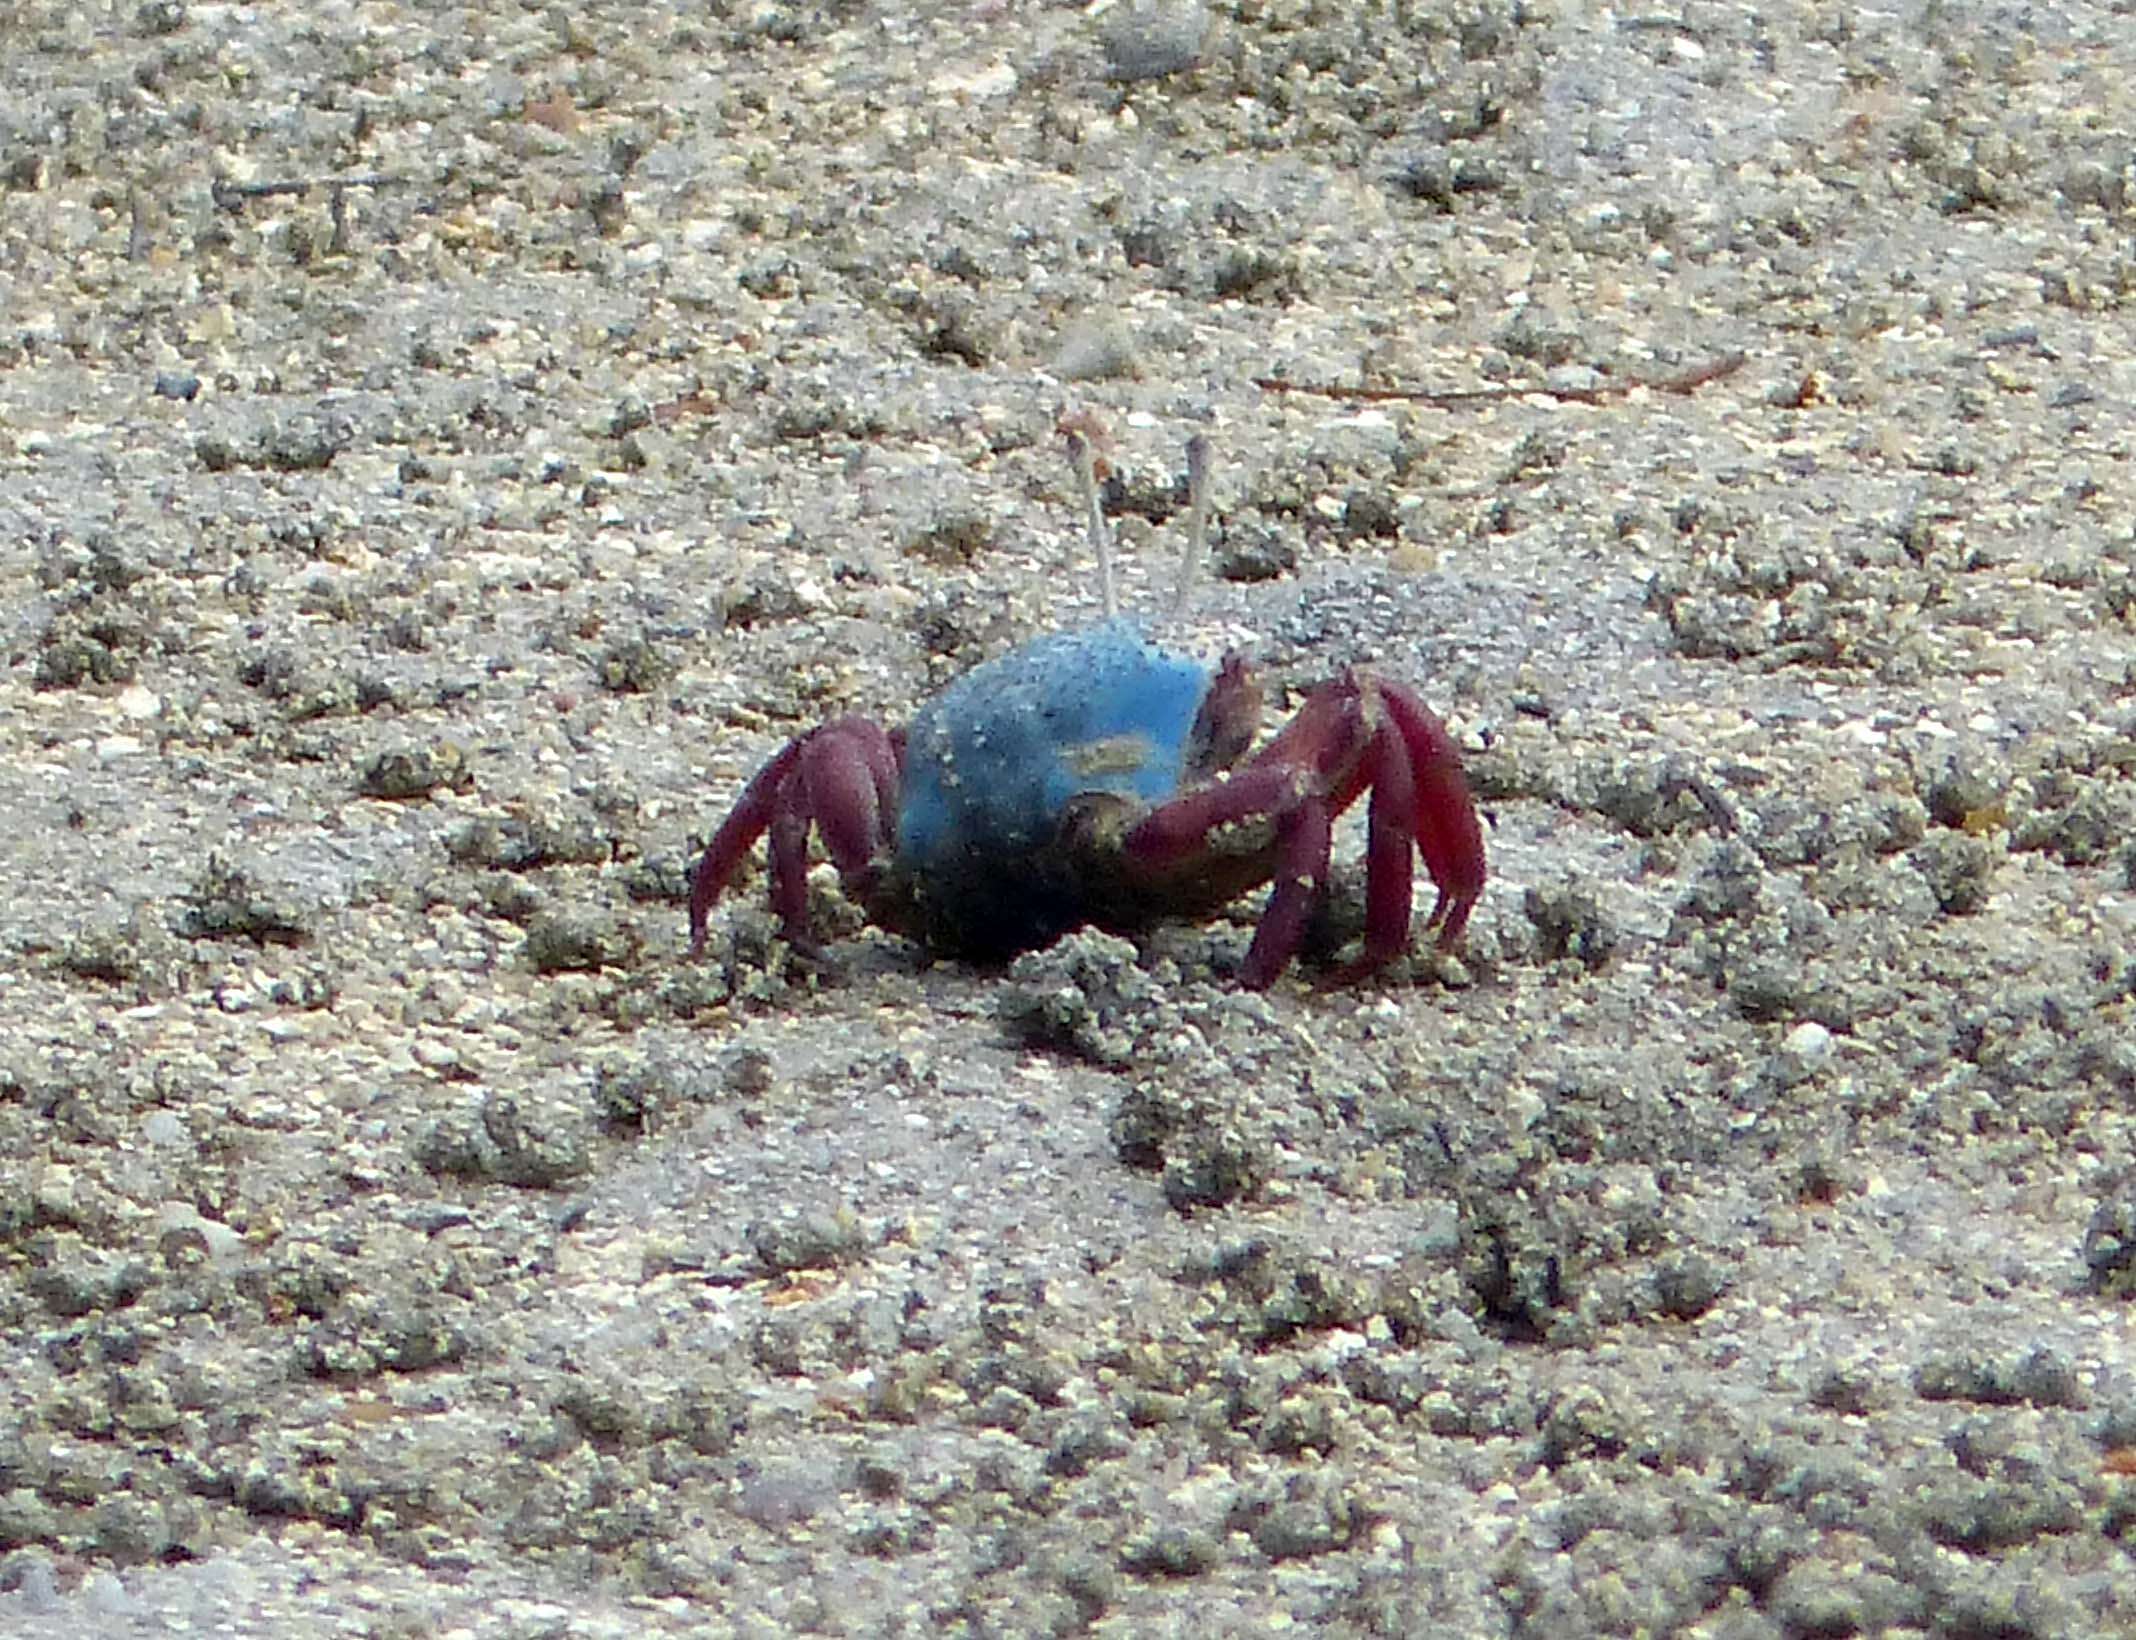 Image of Fiddler crab